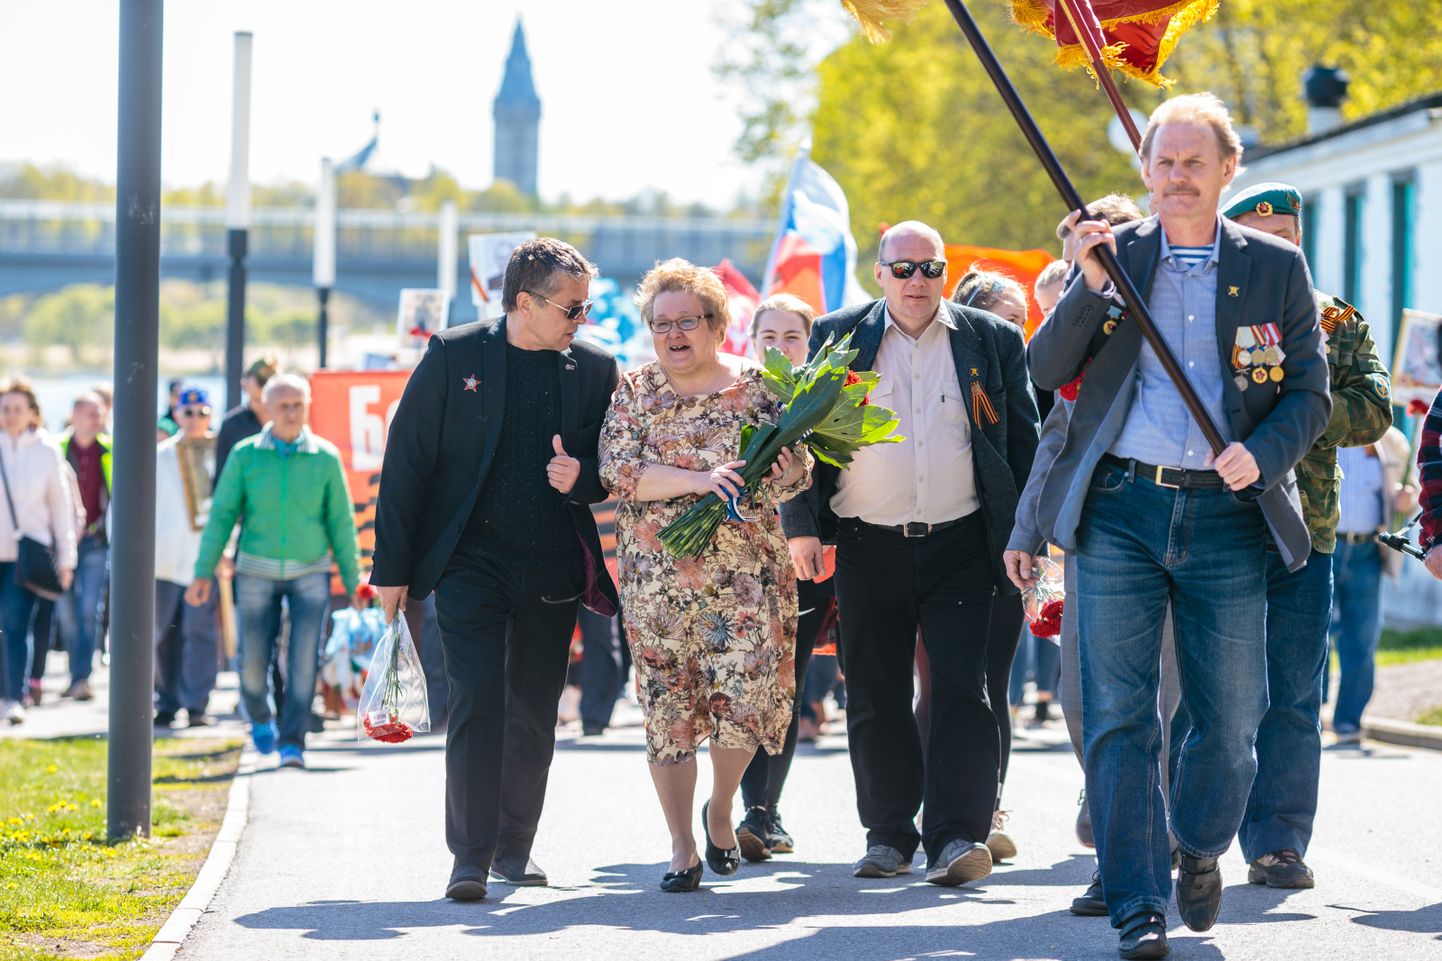 Организатор краснознаменных шествий на 9 мая - депутат Нарвского горсобрания, бывшая центристка Лариса Оленина (в центре) дошла до членства во фракции партии EKRE, считая ее оплотом консерватизма.